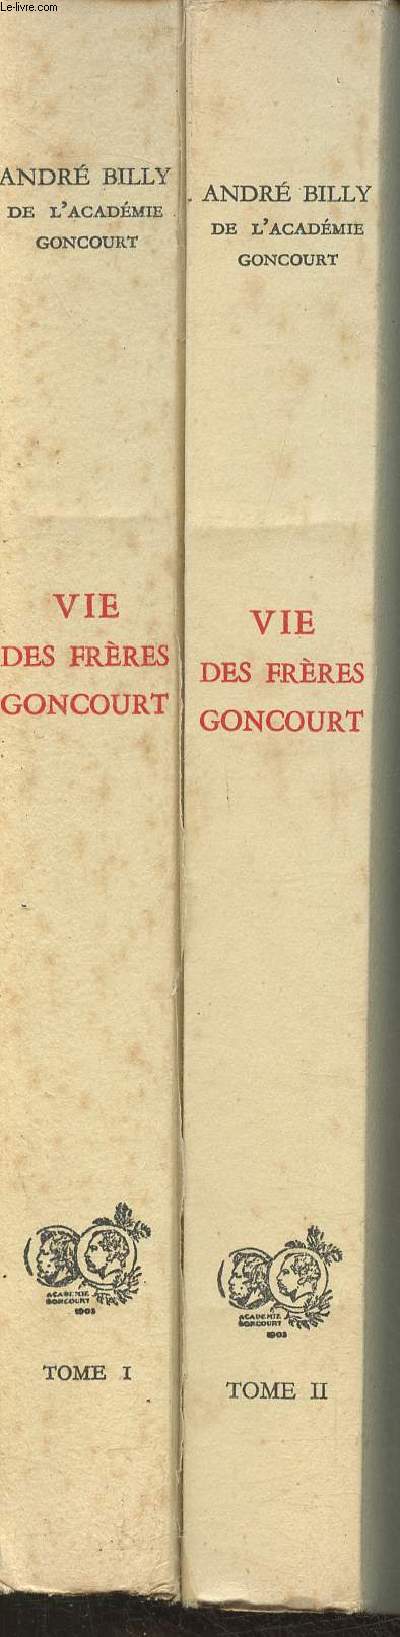 Vie des Frres Goncourt- Prcdant le journal d'Edmond et Jules Goncourt- Tomes I et II (en 2 volumes) - Exemplaire 1538/5150 sur vlin de renage au filigrane.